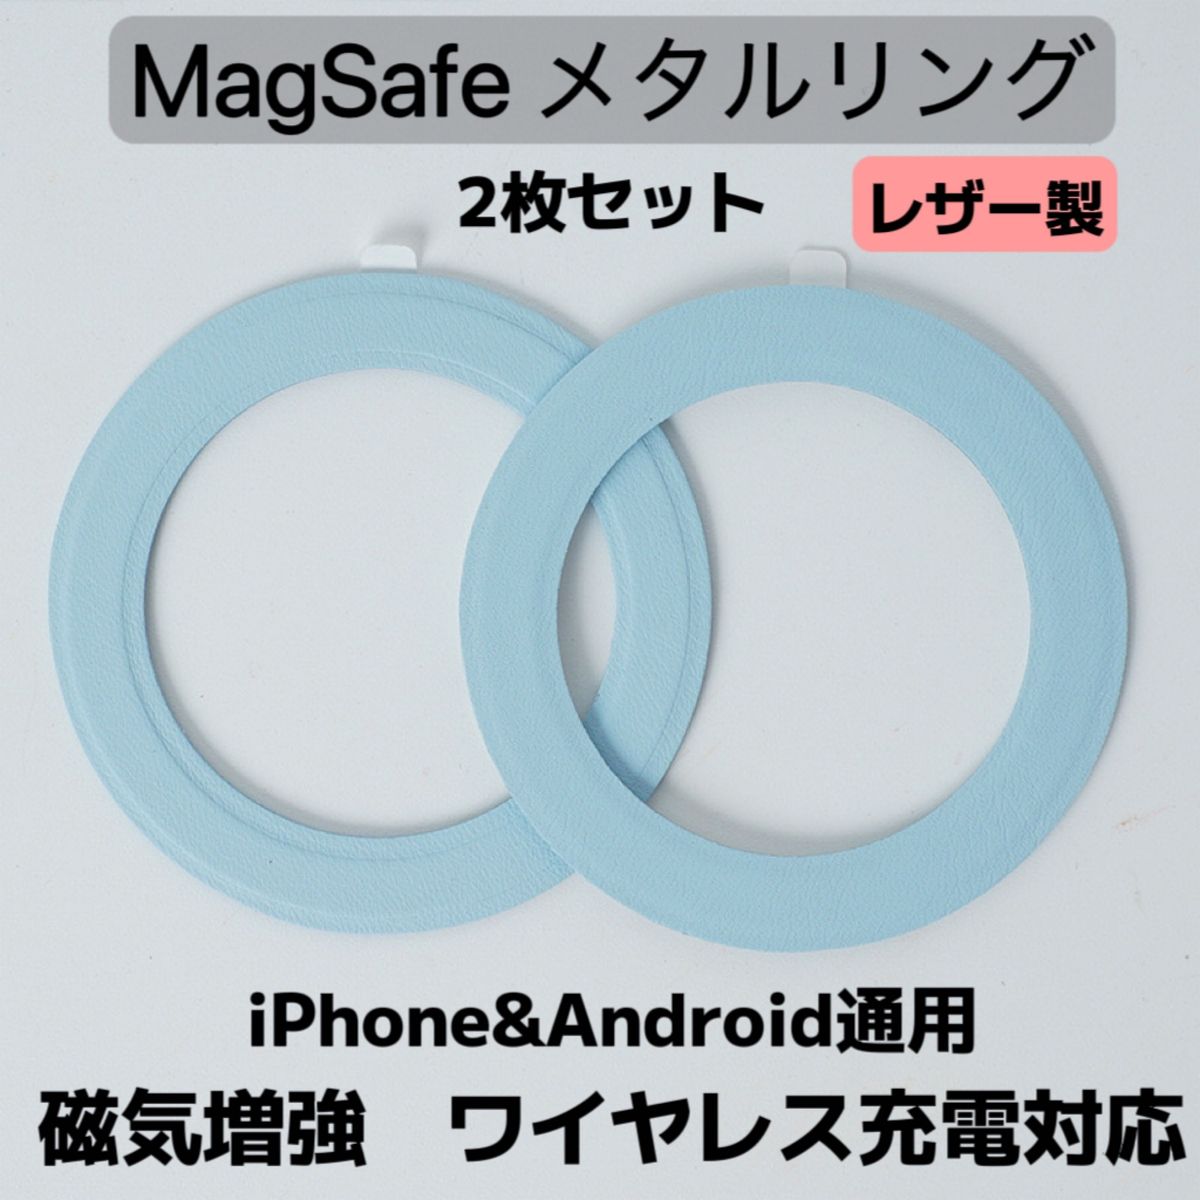 2枚セット マグセーフリング MagSafeワイヤレス充電対応 マグネット対応 磁気増加 落下防止 アライメントカード付 色指定可